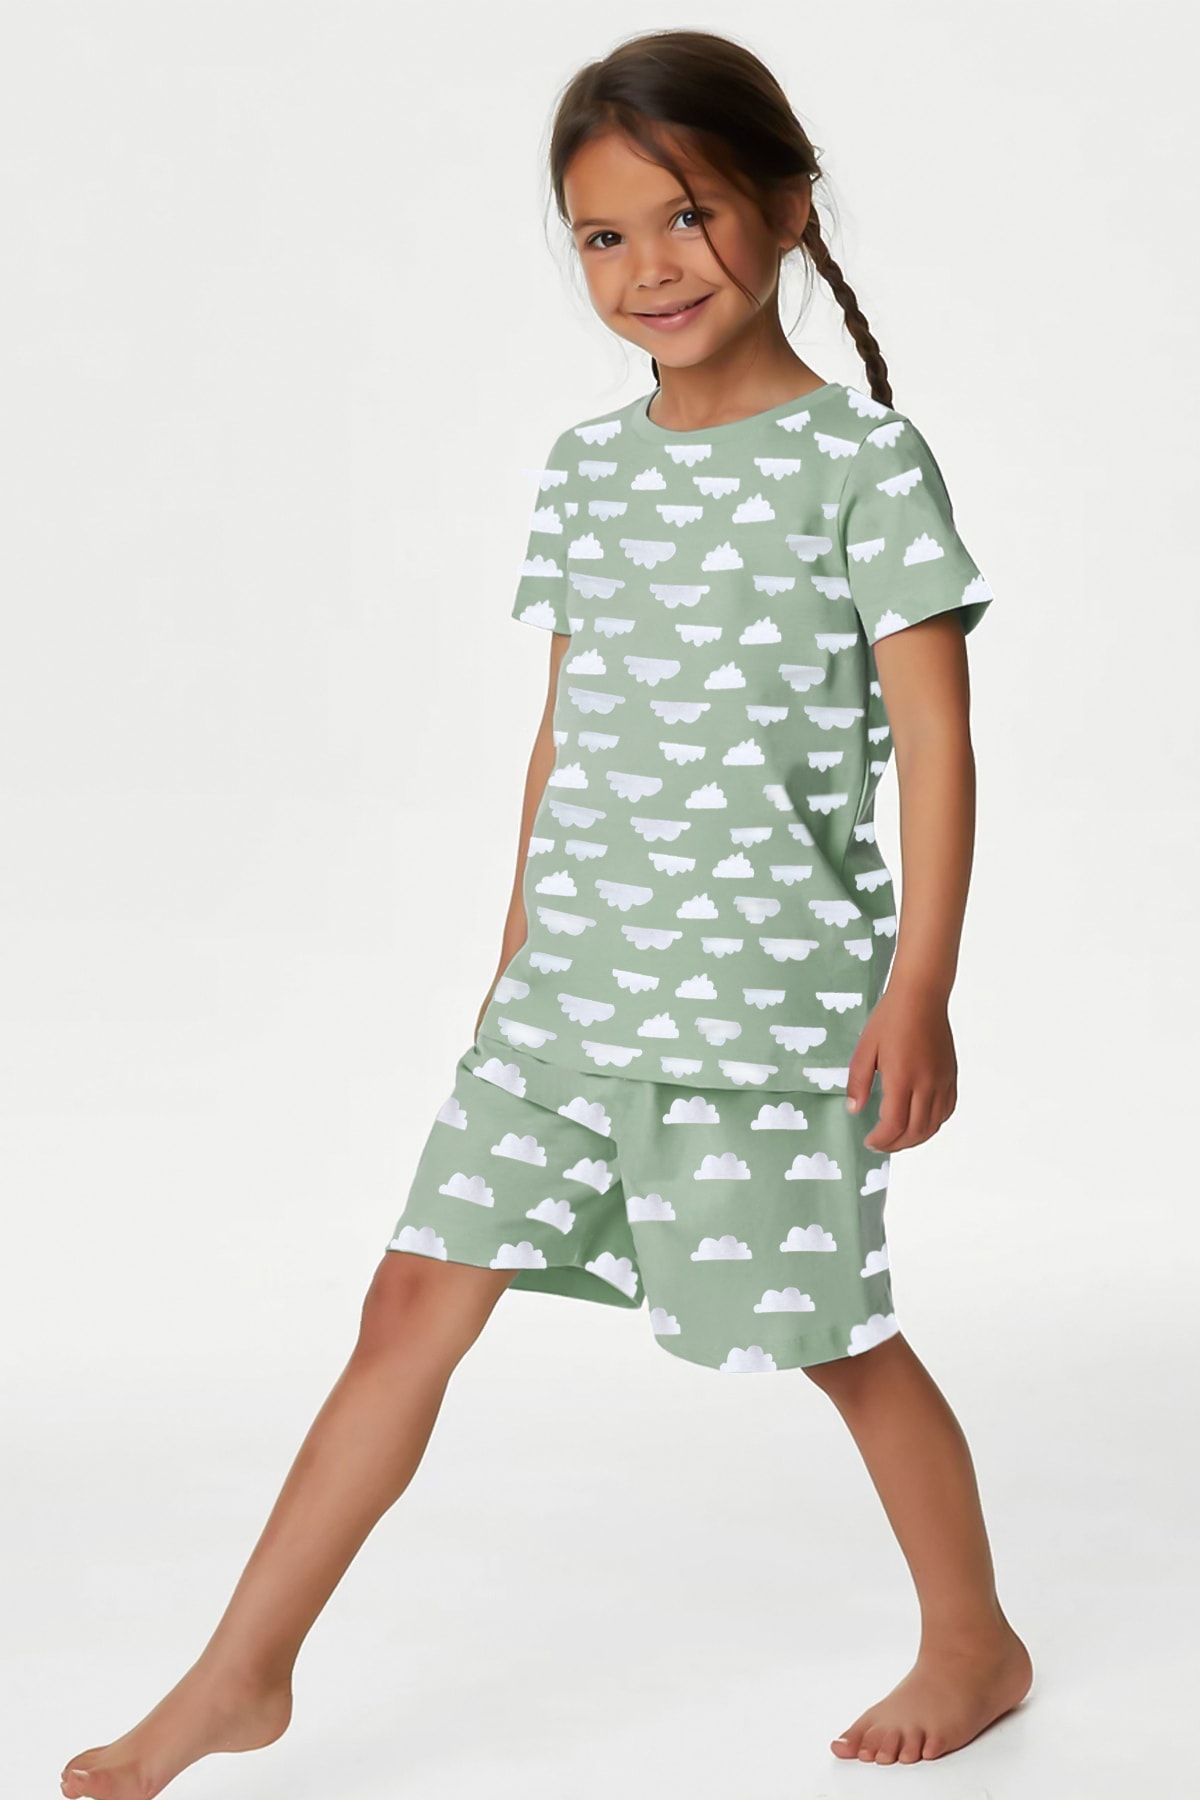 Lilabio %100 Organik Pamuk Kız Çocuk Pijama Takımı